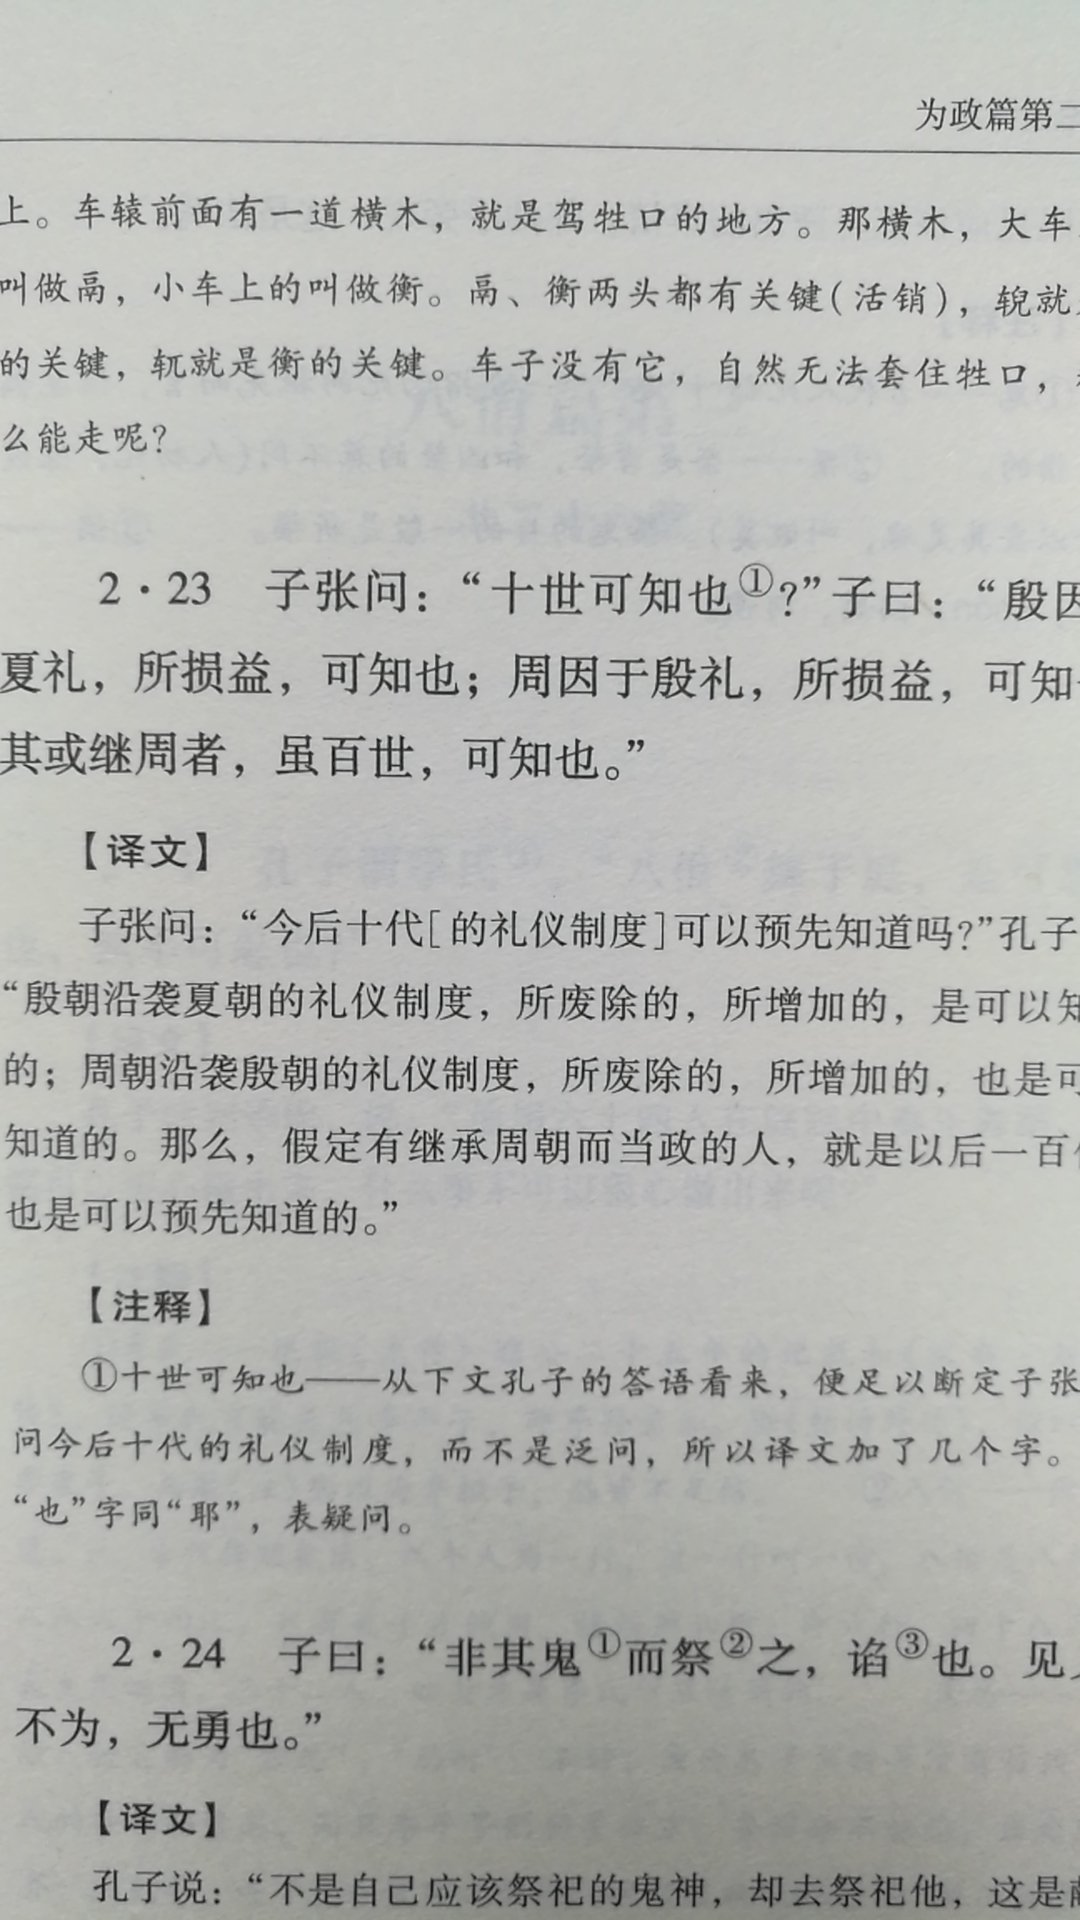 字的大小很合适，注释、译解也不负责，中华书局的经典之作。唯一的缺点就是需要自己注拼音。